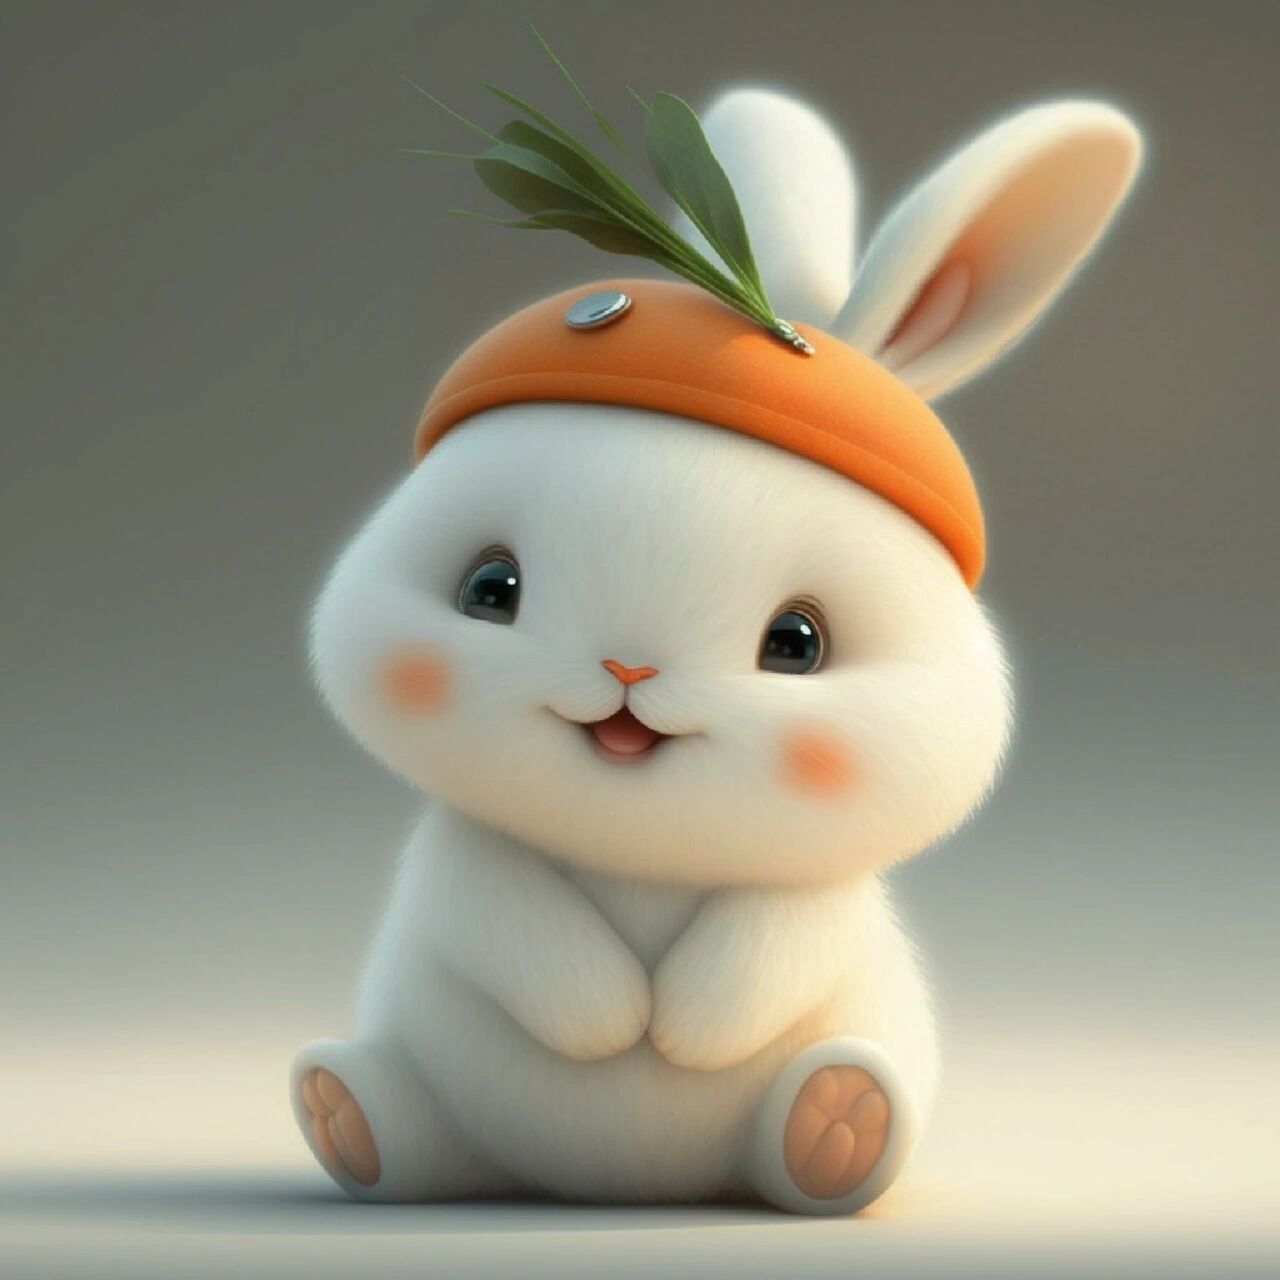 爱吃胡萝卜的小胖兔   